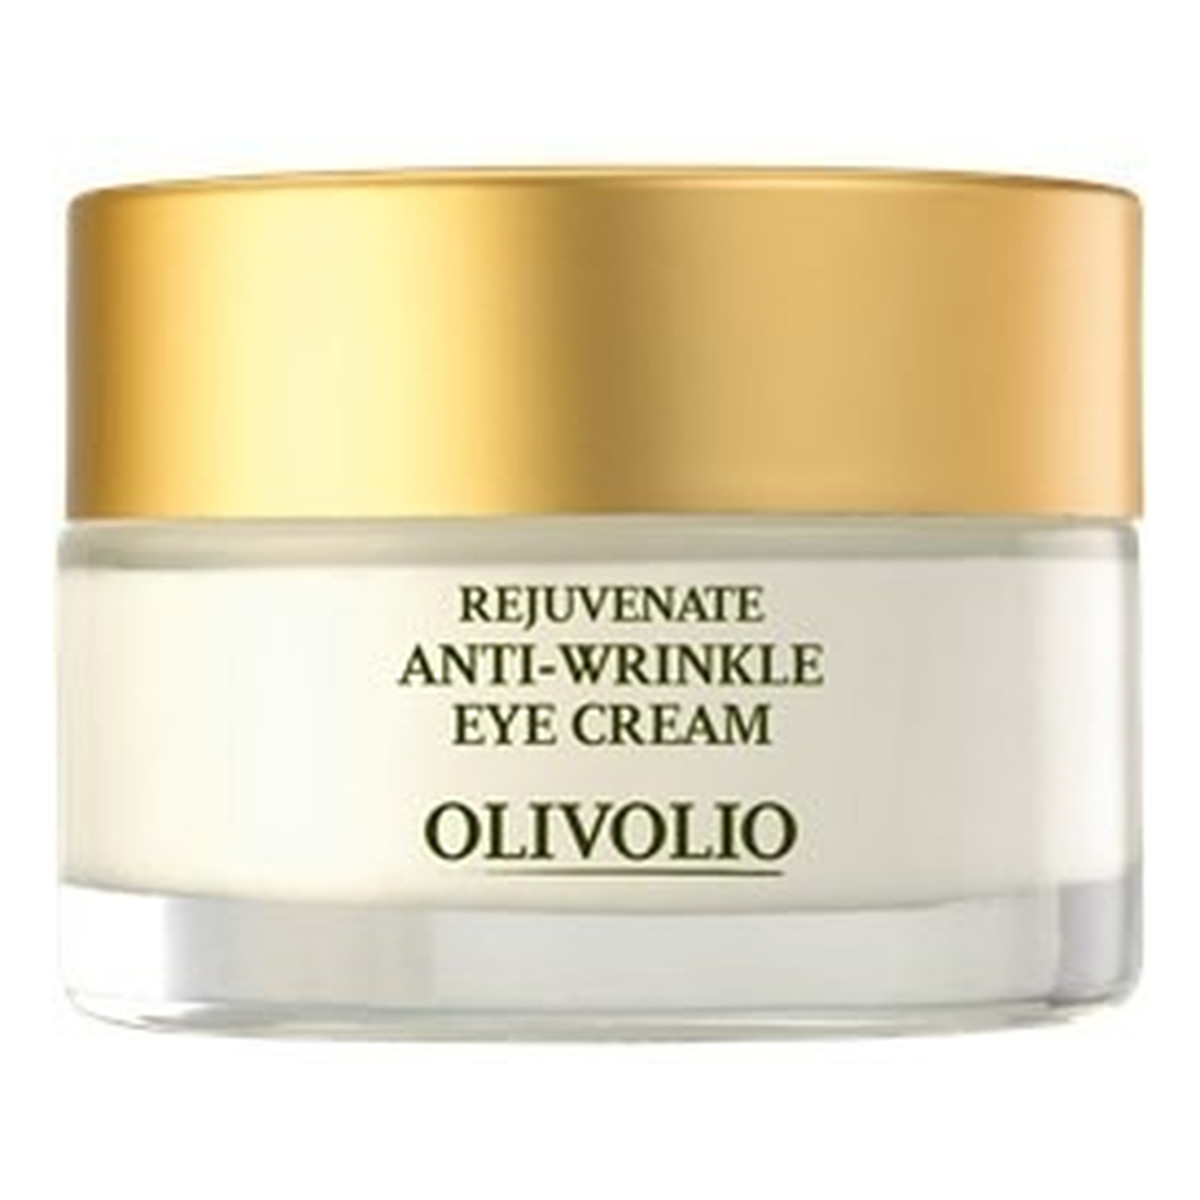 Olivolio Rejuvenate Anti-Wrinkle Eye Cream Przeciwzmarszczkowy krem pod oczy z kofeiną i kwasem hialuronowym 30ml